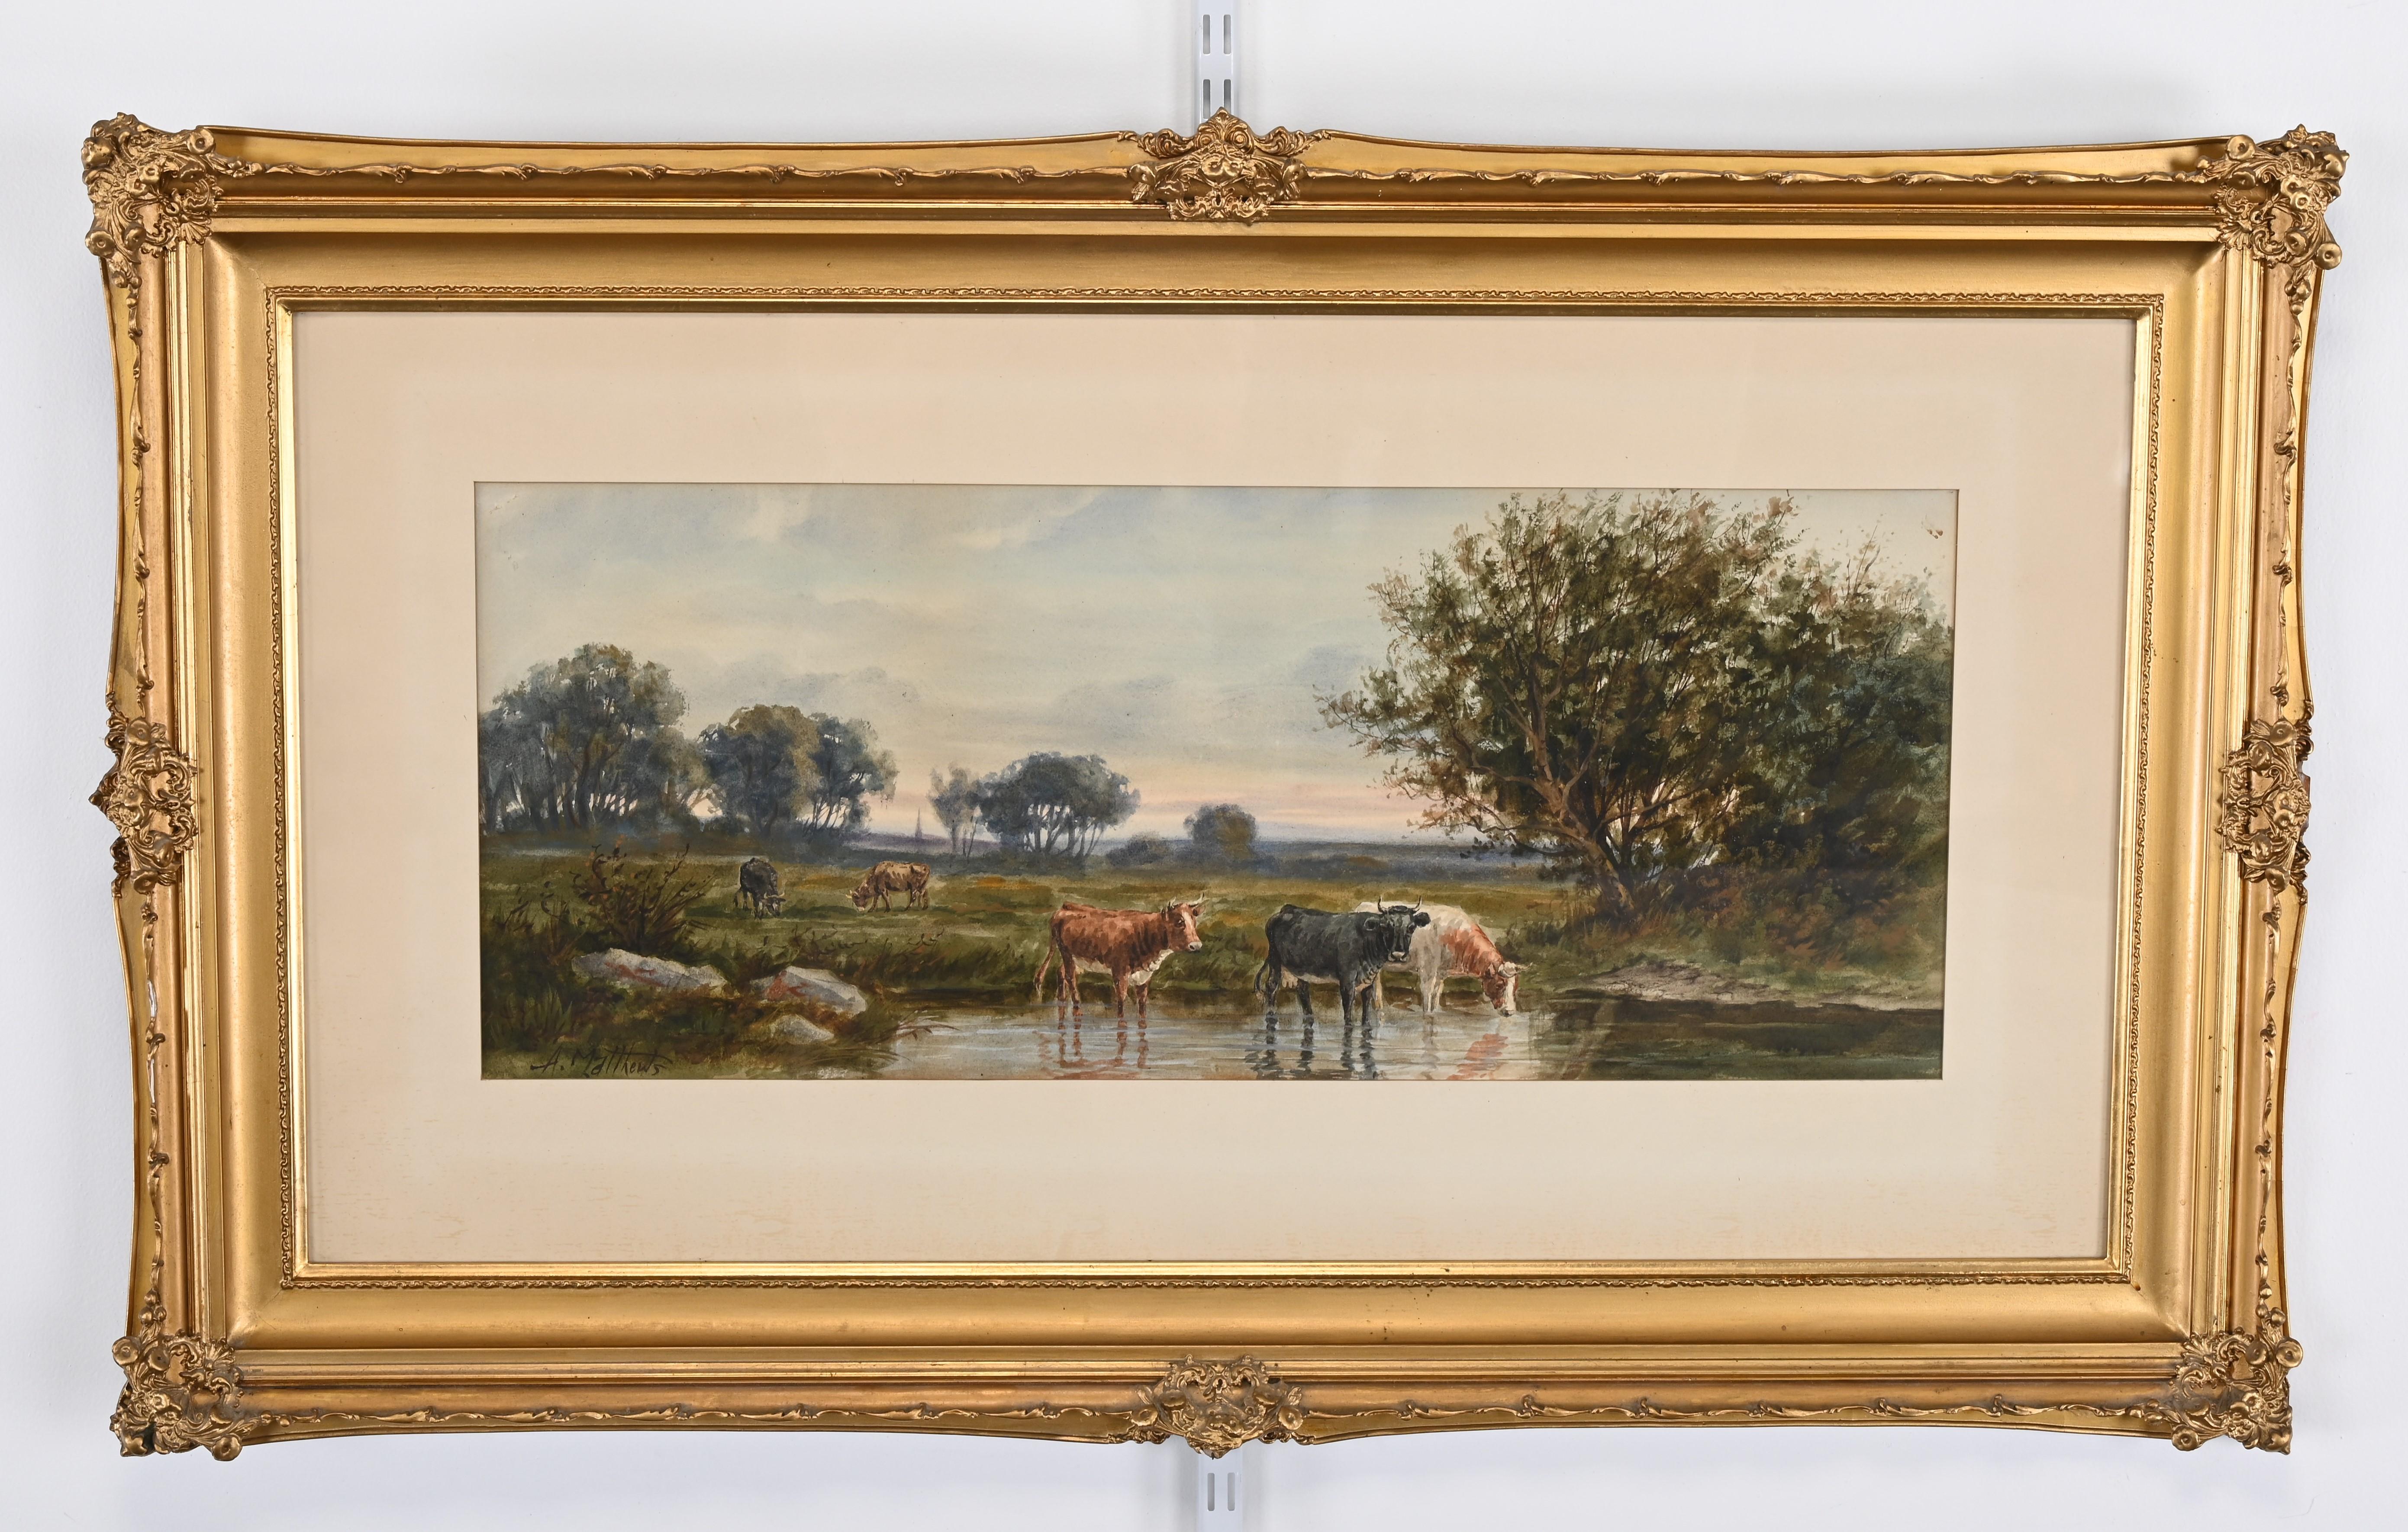 Magnifique aquarelle de A. Matthews représentant un paysage avec du bétail en train de s'abreuver. Cette peinture du XIXe siècle est encadrée dans un cadre à feuilles d'or de la fin de l'époque victorienne. La peinture est esthétique et bien